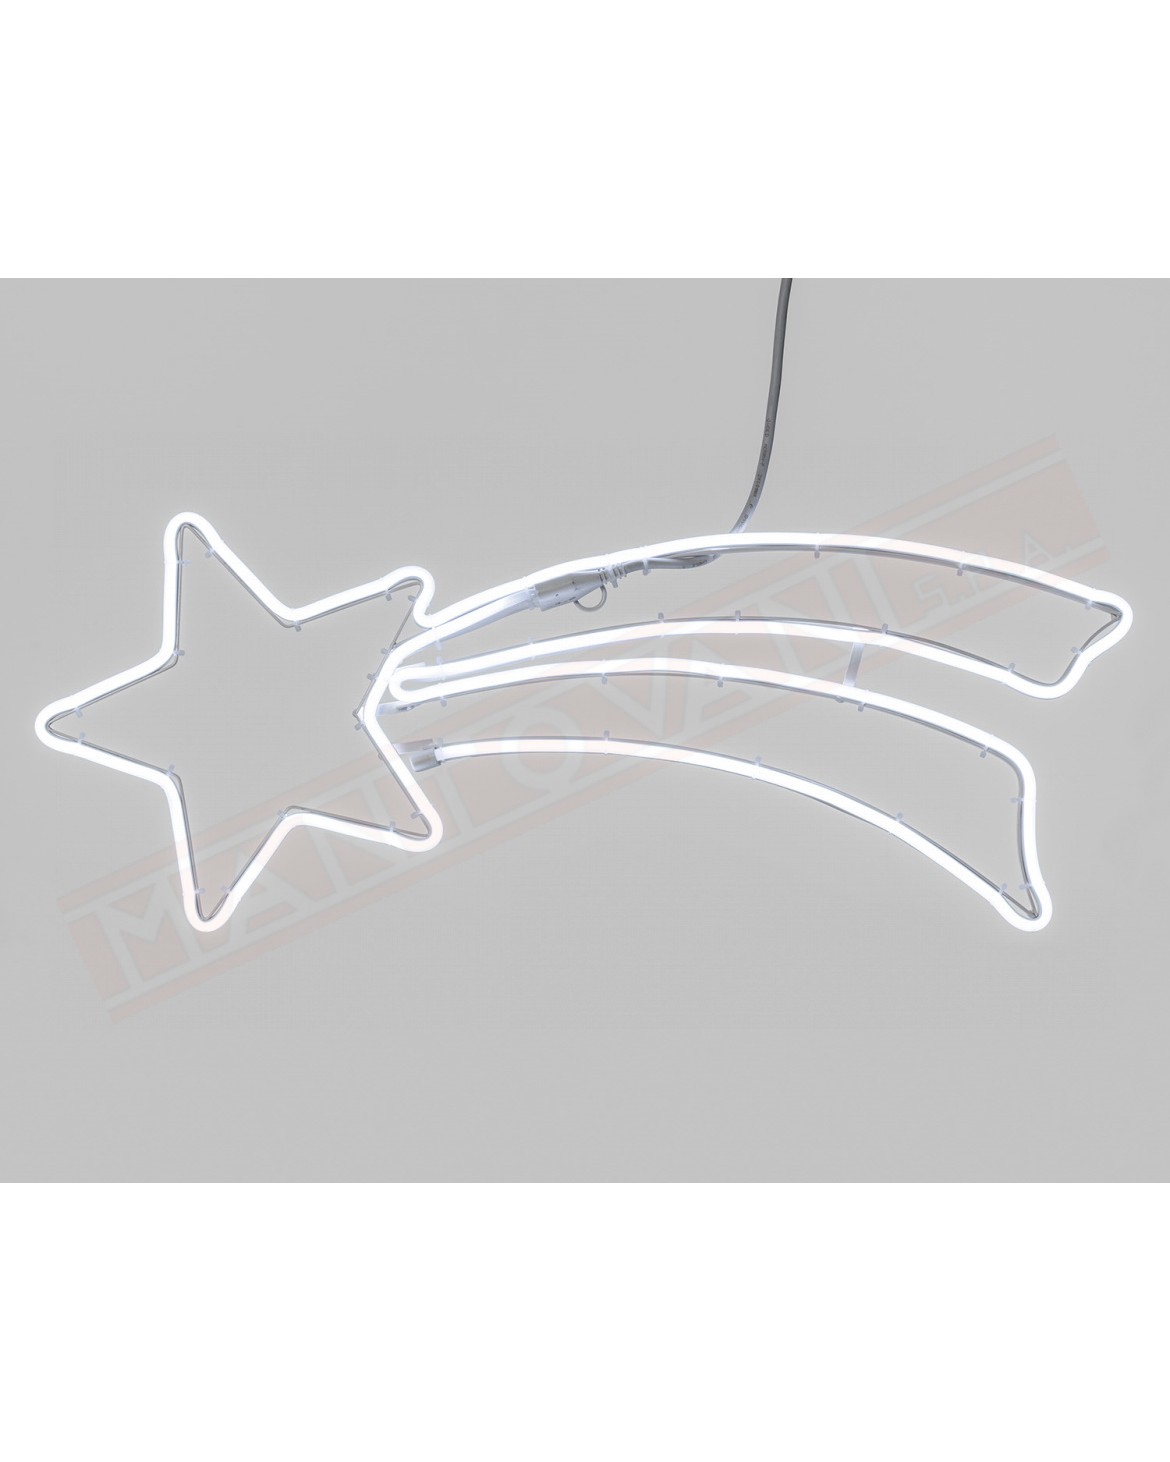 Stella Cometa Coda Doppio Profilo SMD Neon bifacciale 360 LED bianco Luce Fissa 230V Esterno Cavo Bianco 1,5m+70xH27cm